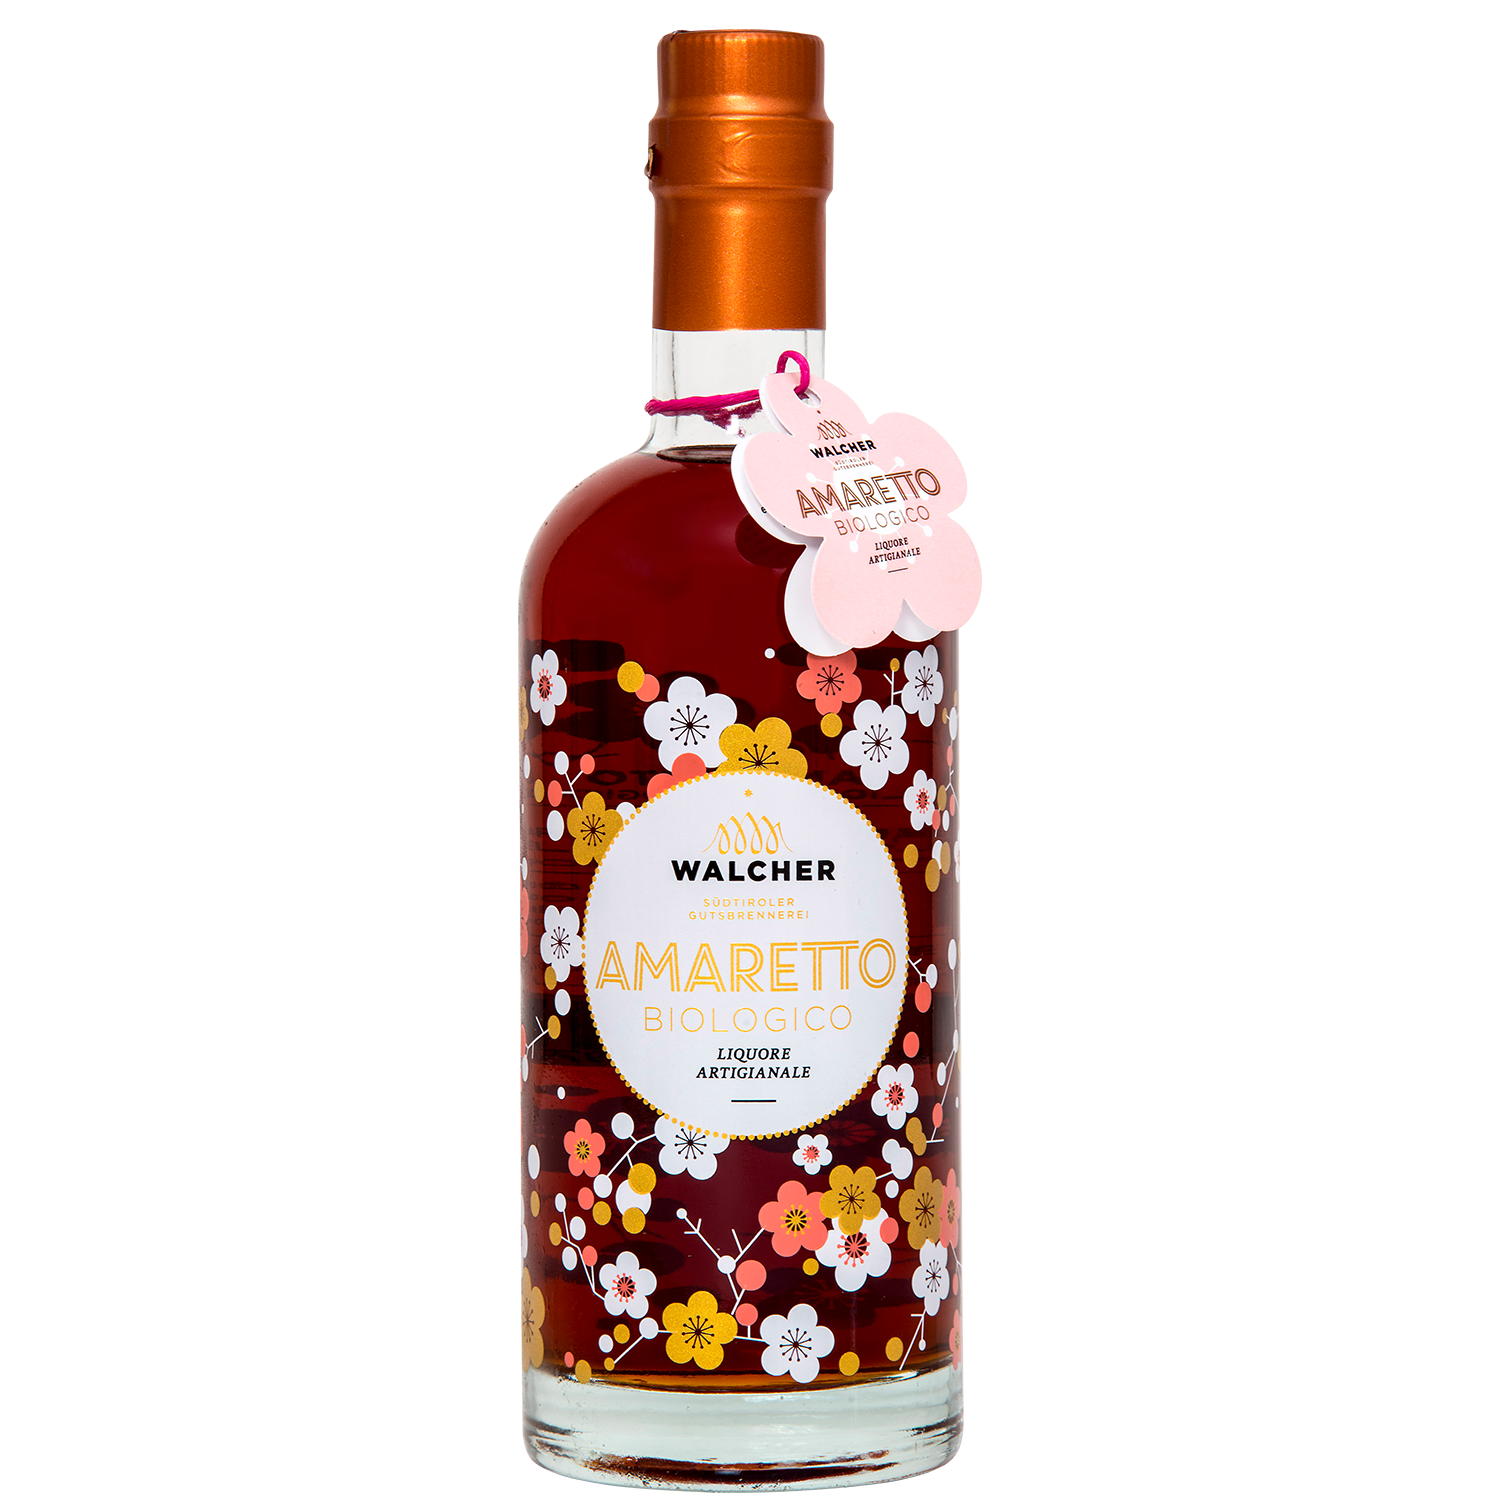 Amaretto Bio Flower in 700ml bottle by Walcher